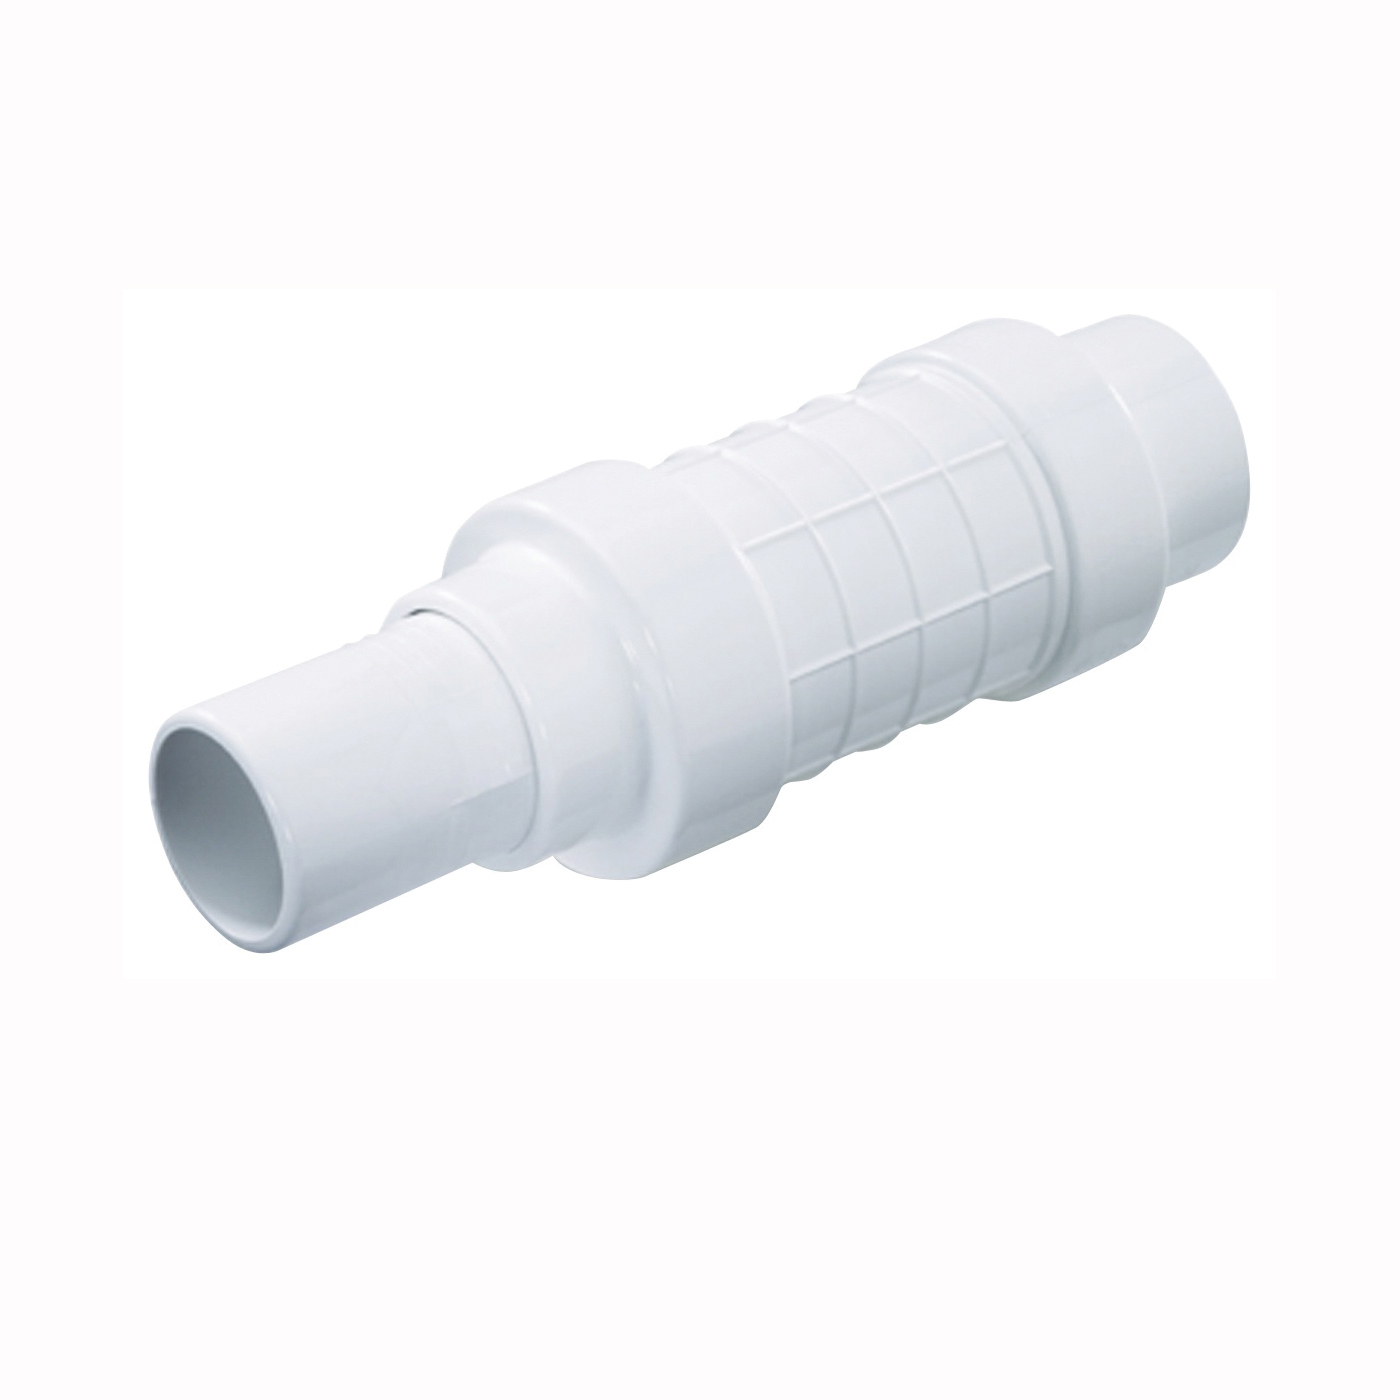 NDS Quik-Fix QF-2000 Pipe Repair Coupling, 2 in, Socket x Spigot, White, SCH 40 Schedule, 150 psi Pressure